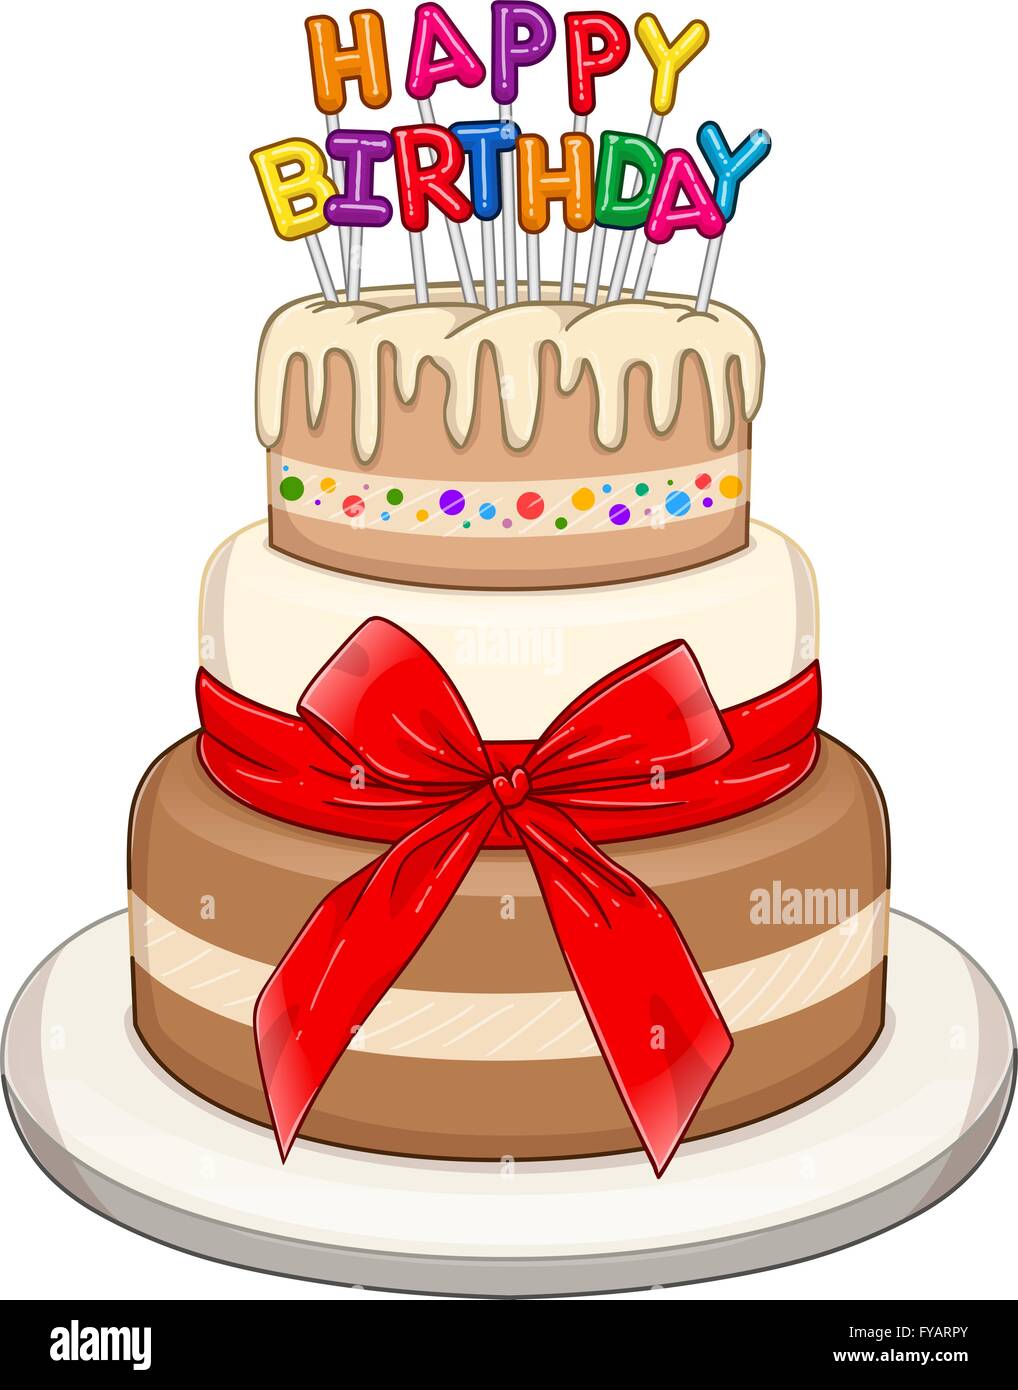 Ilustración vectorial de 3 pisos con torta de cumpleaños feliz